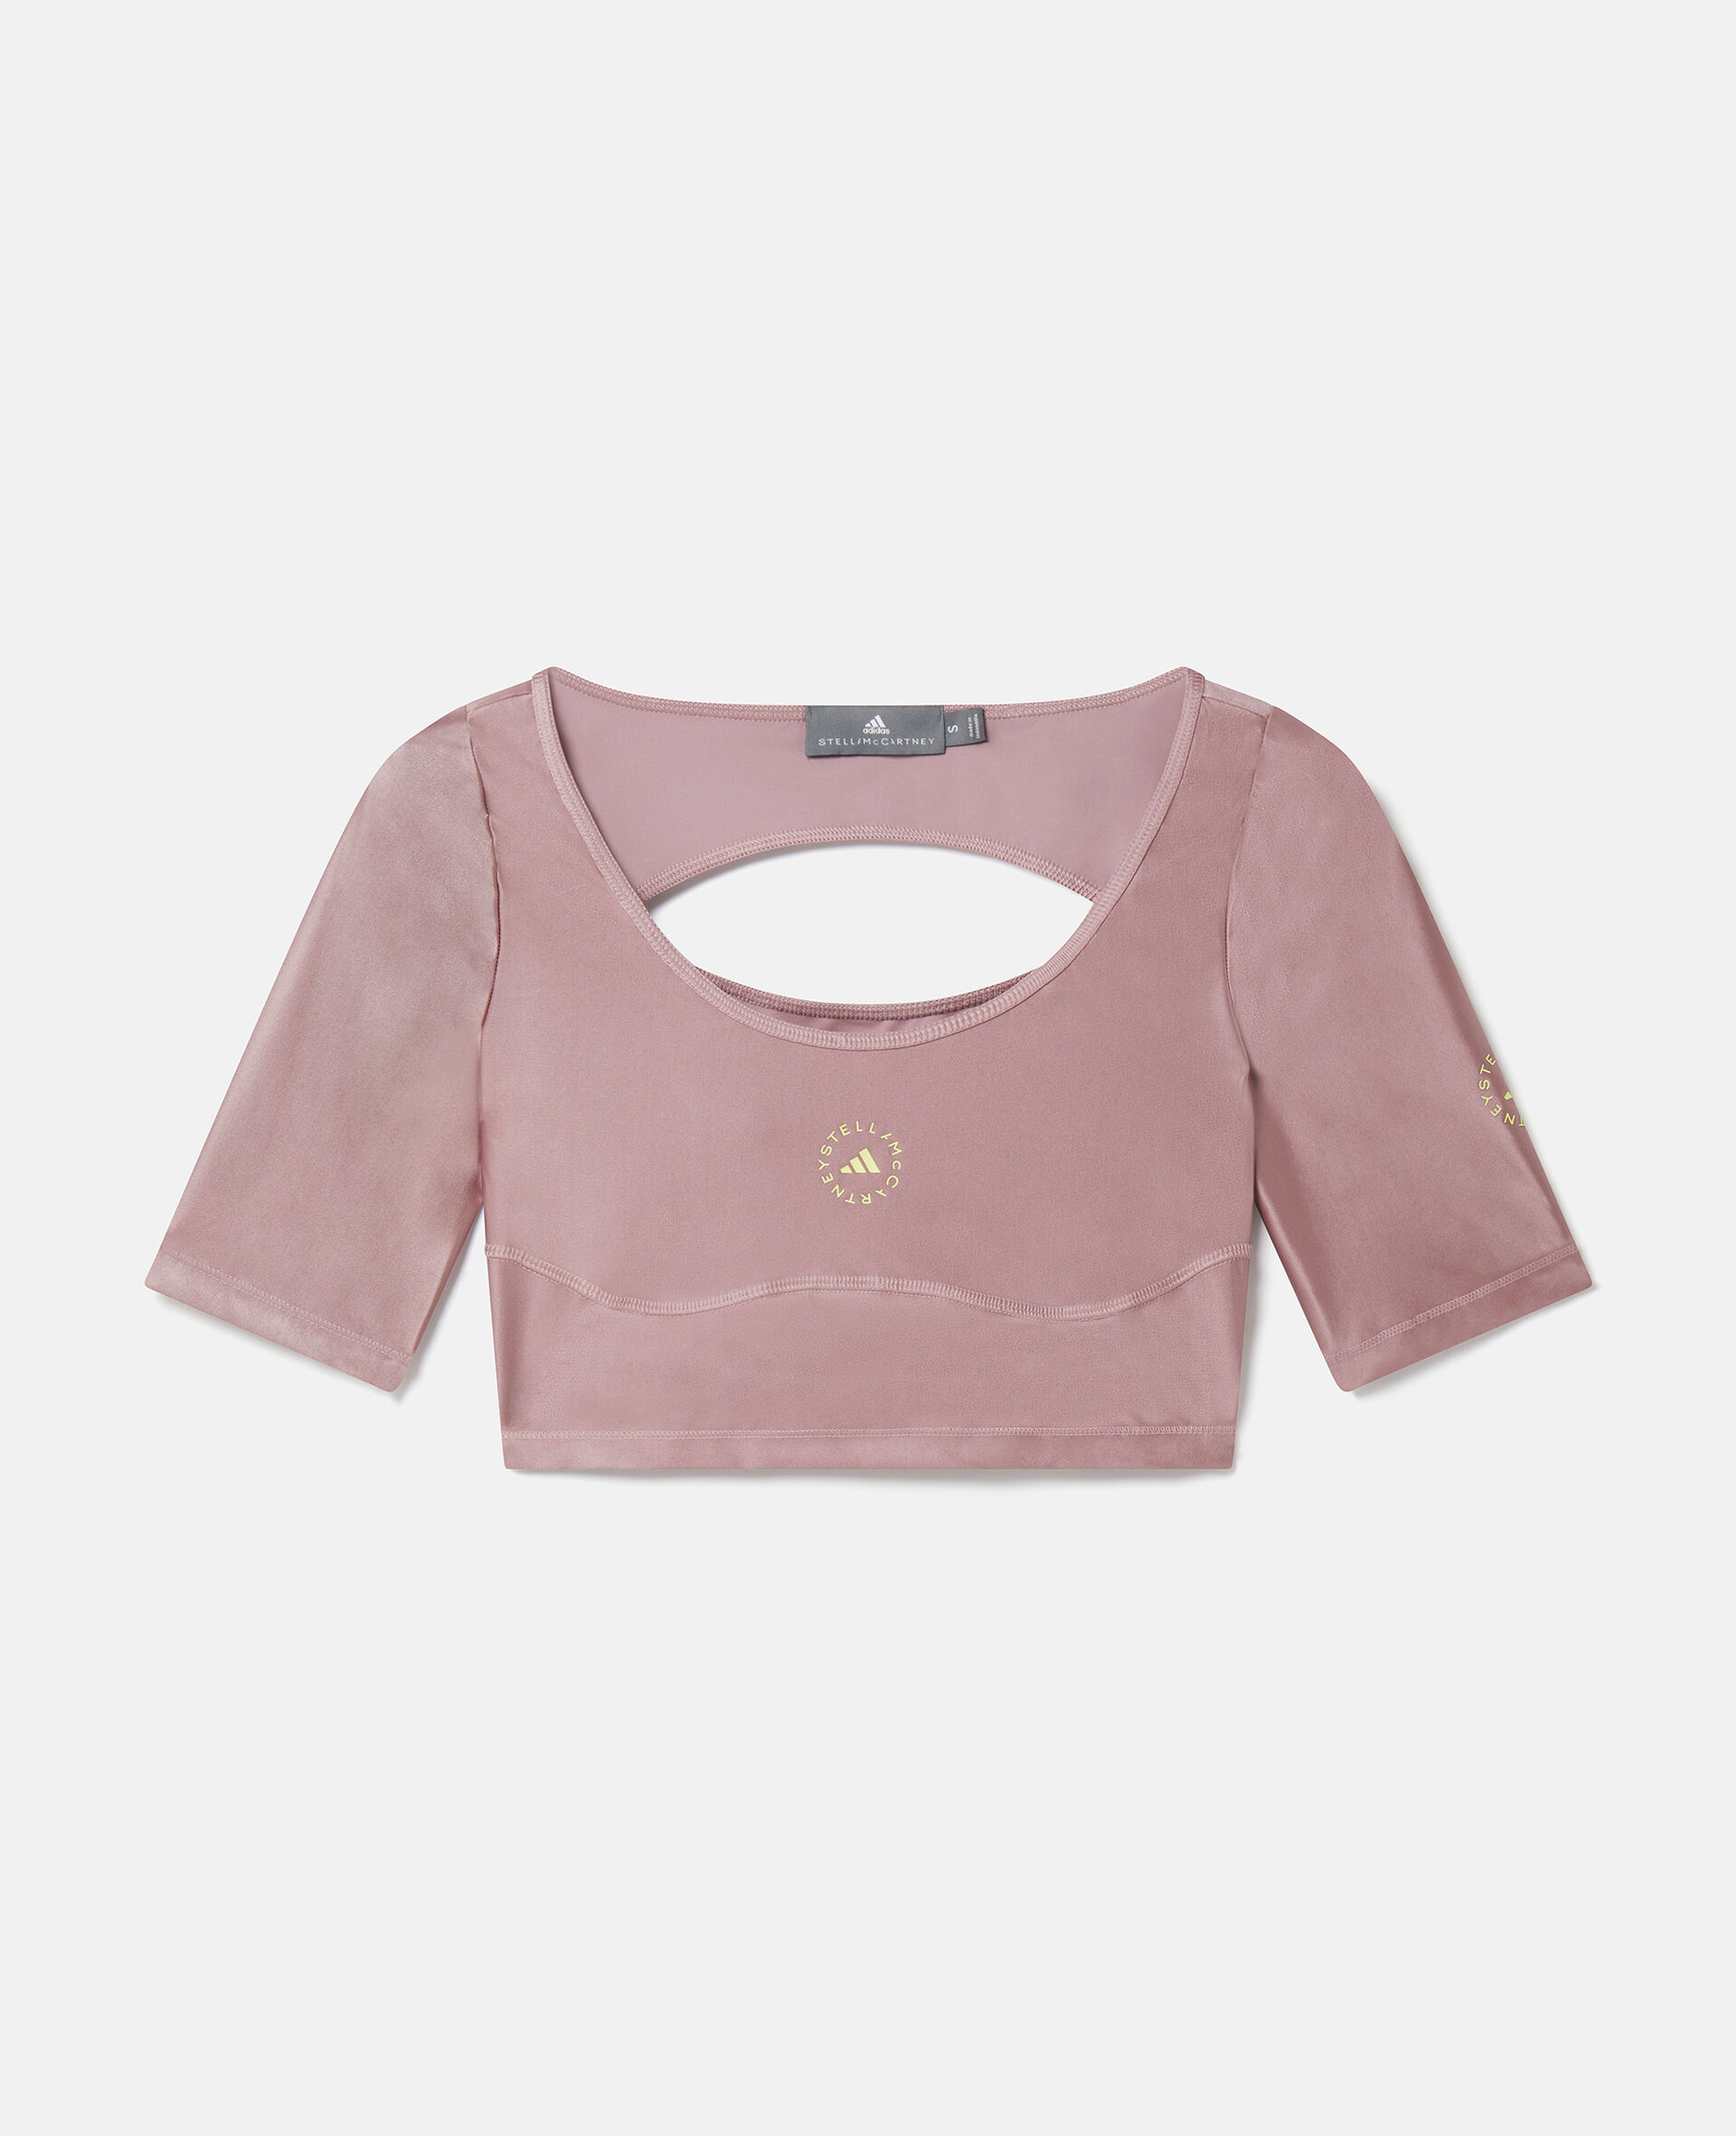 Buy Pink Seamless Long-Sleeve Crop Top online in Dubai